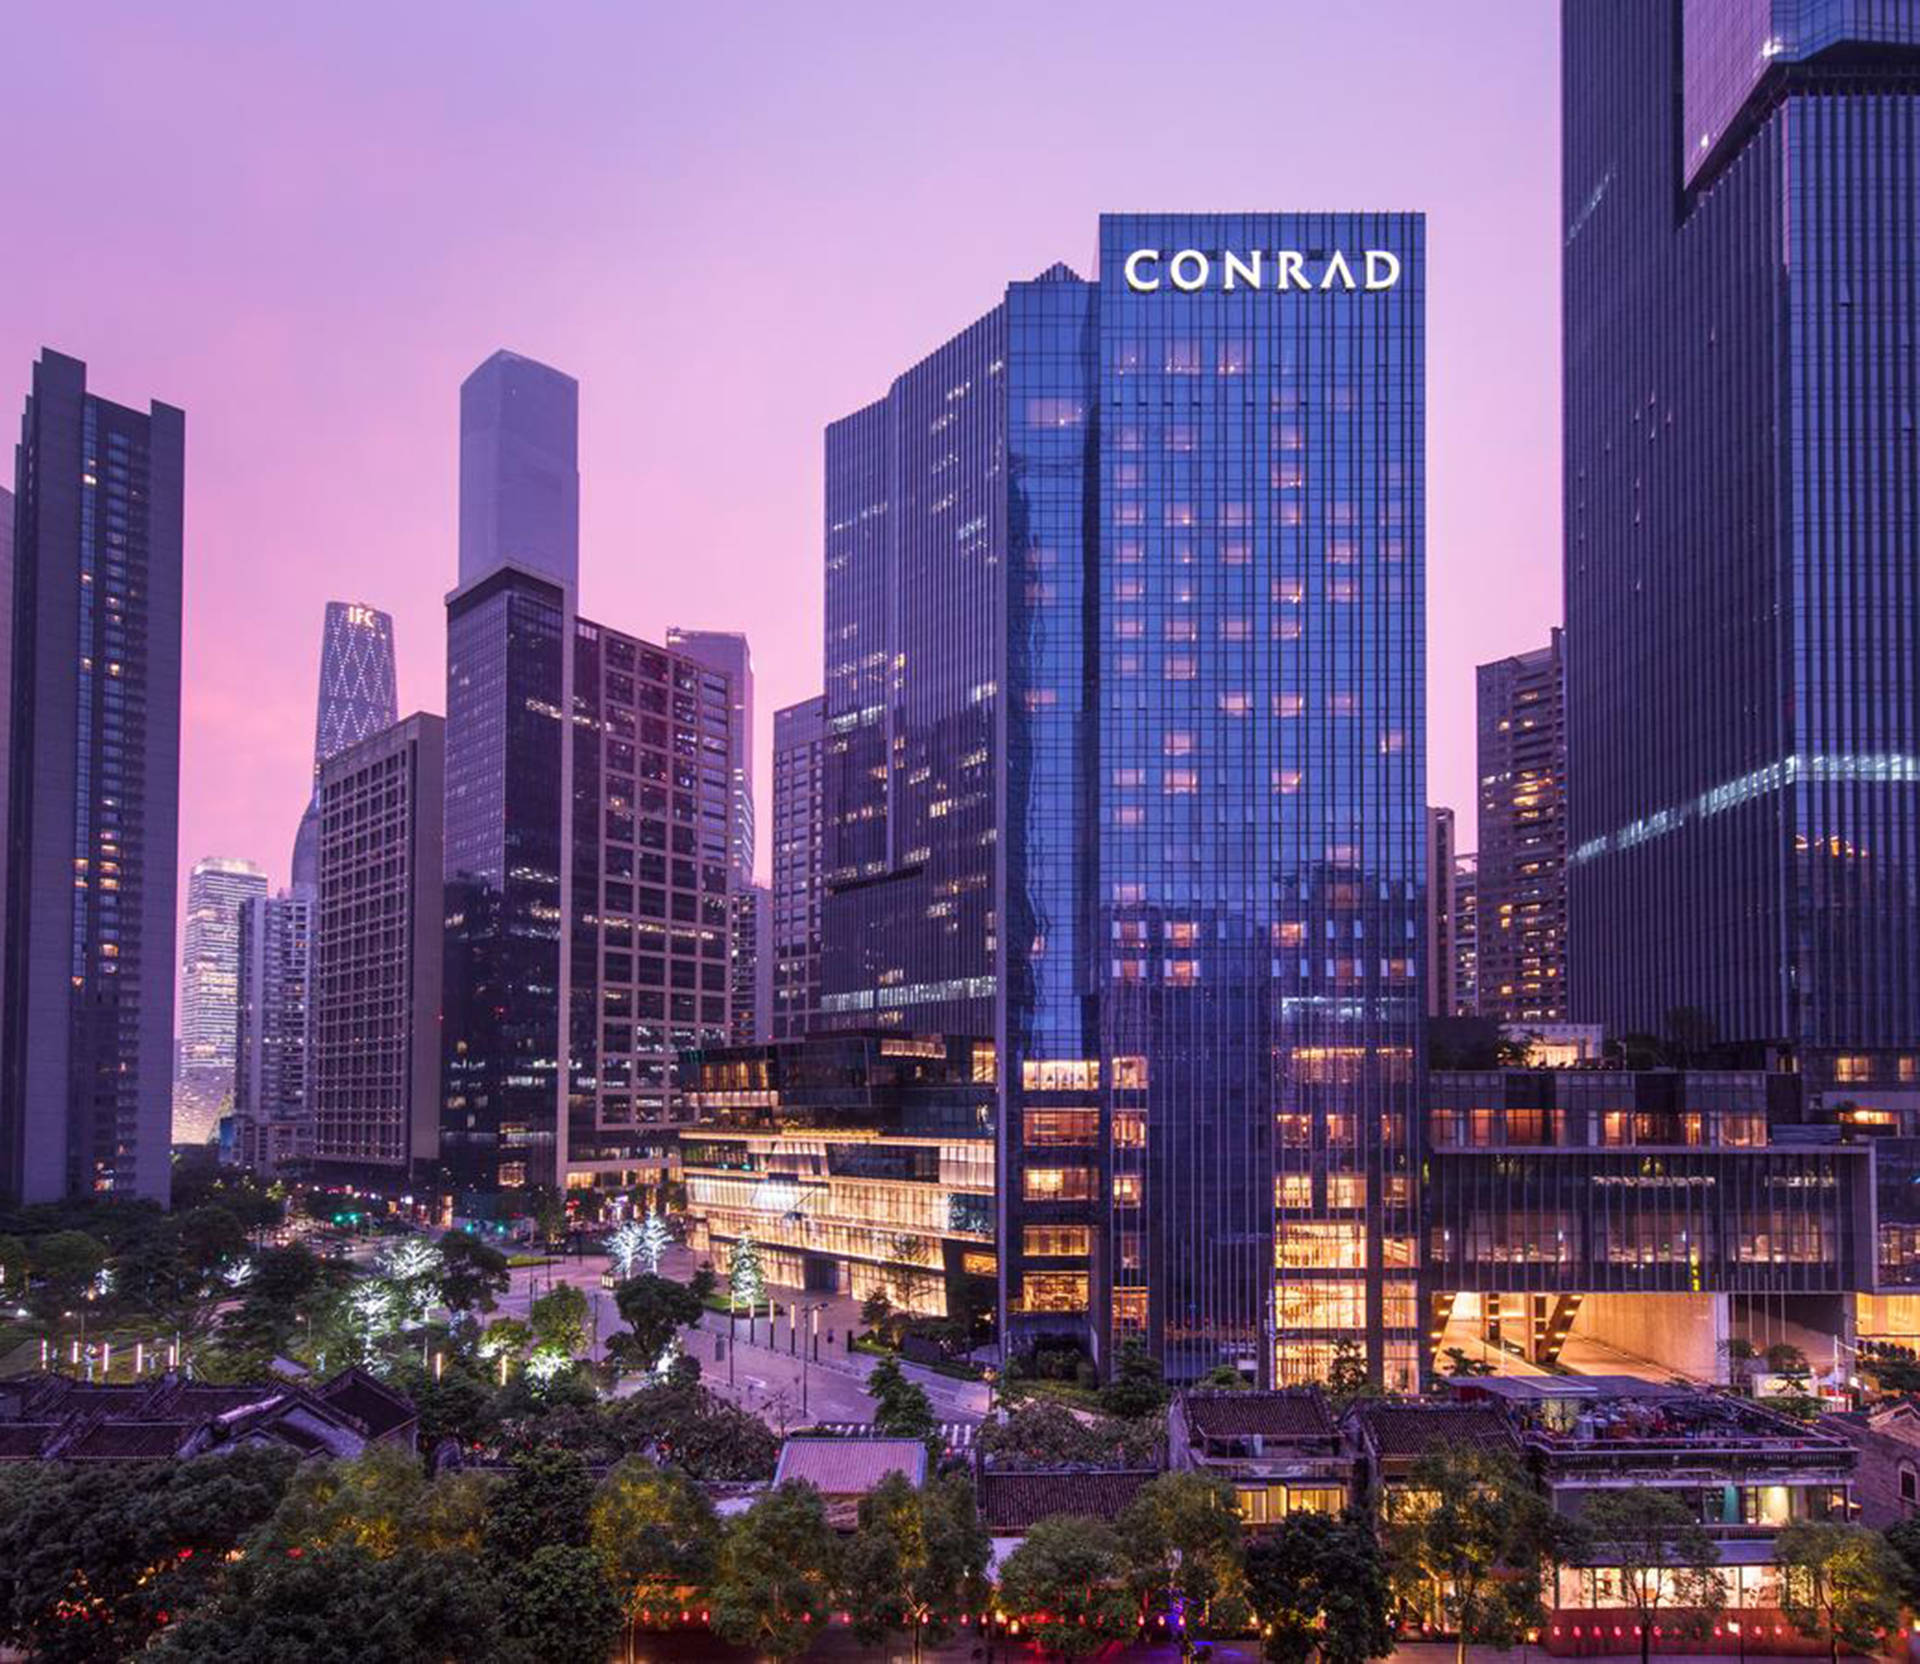 Conrad Hotel Guangzhou Wallpaper